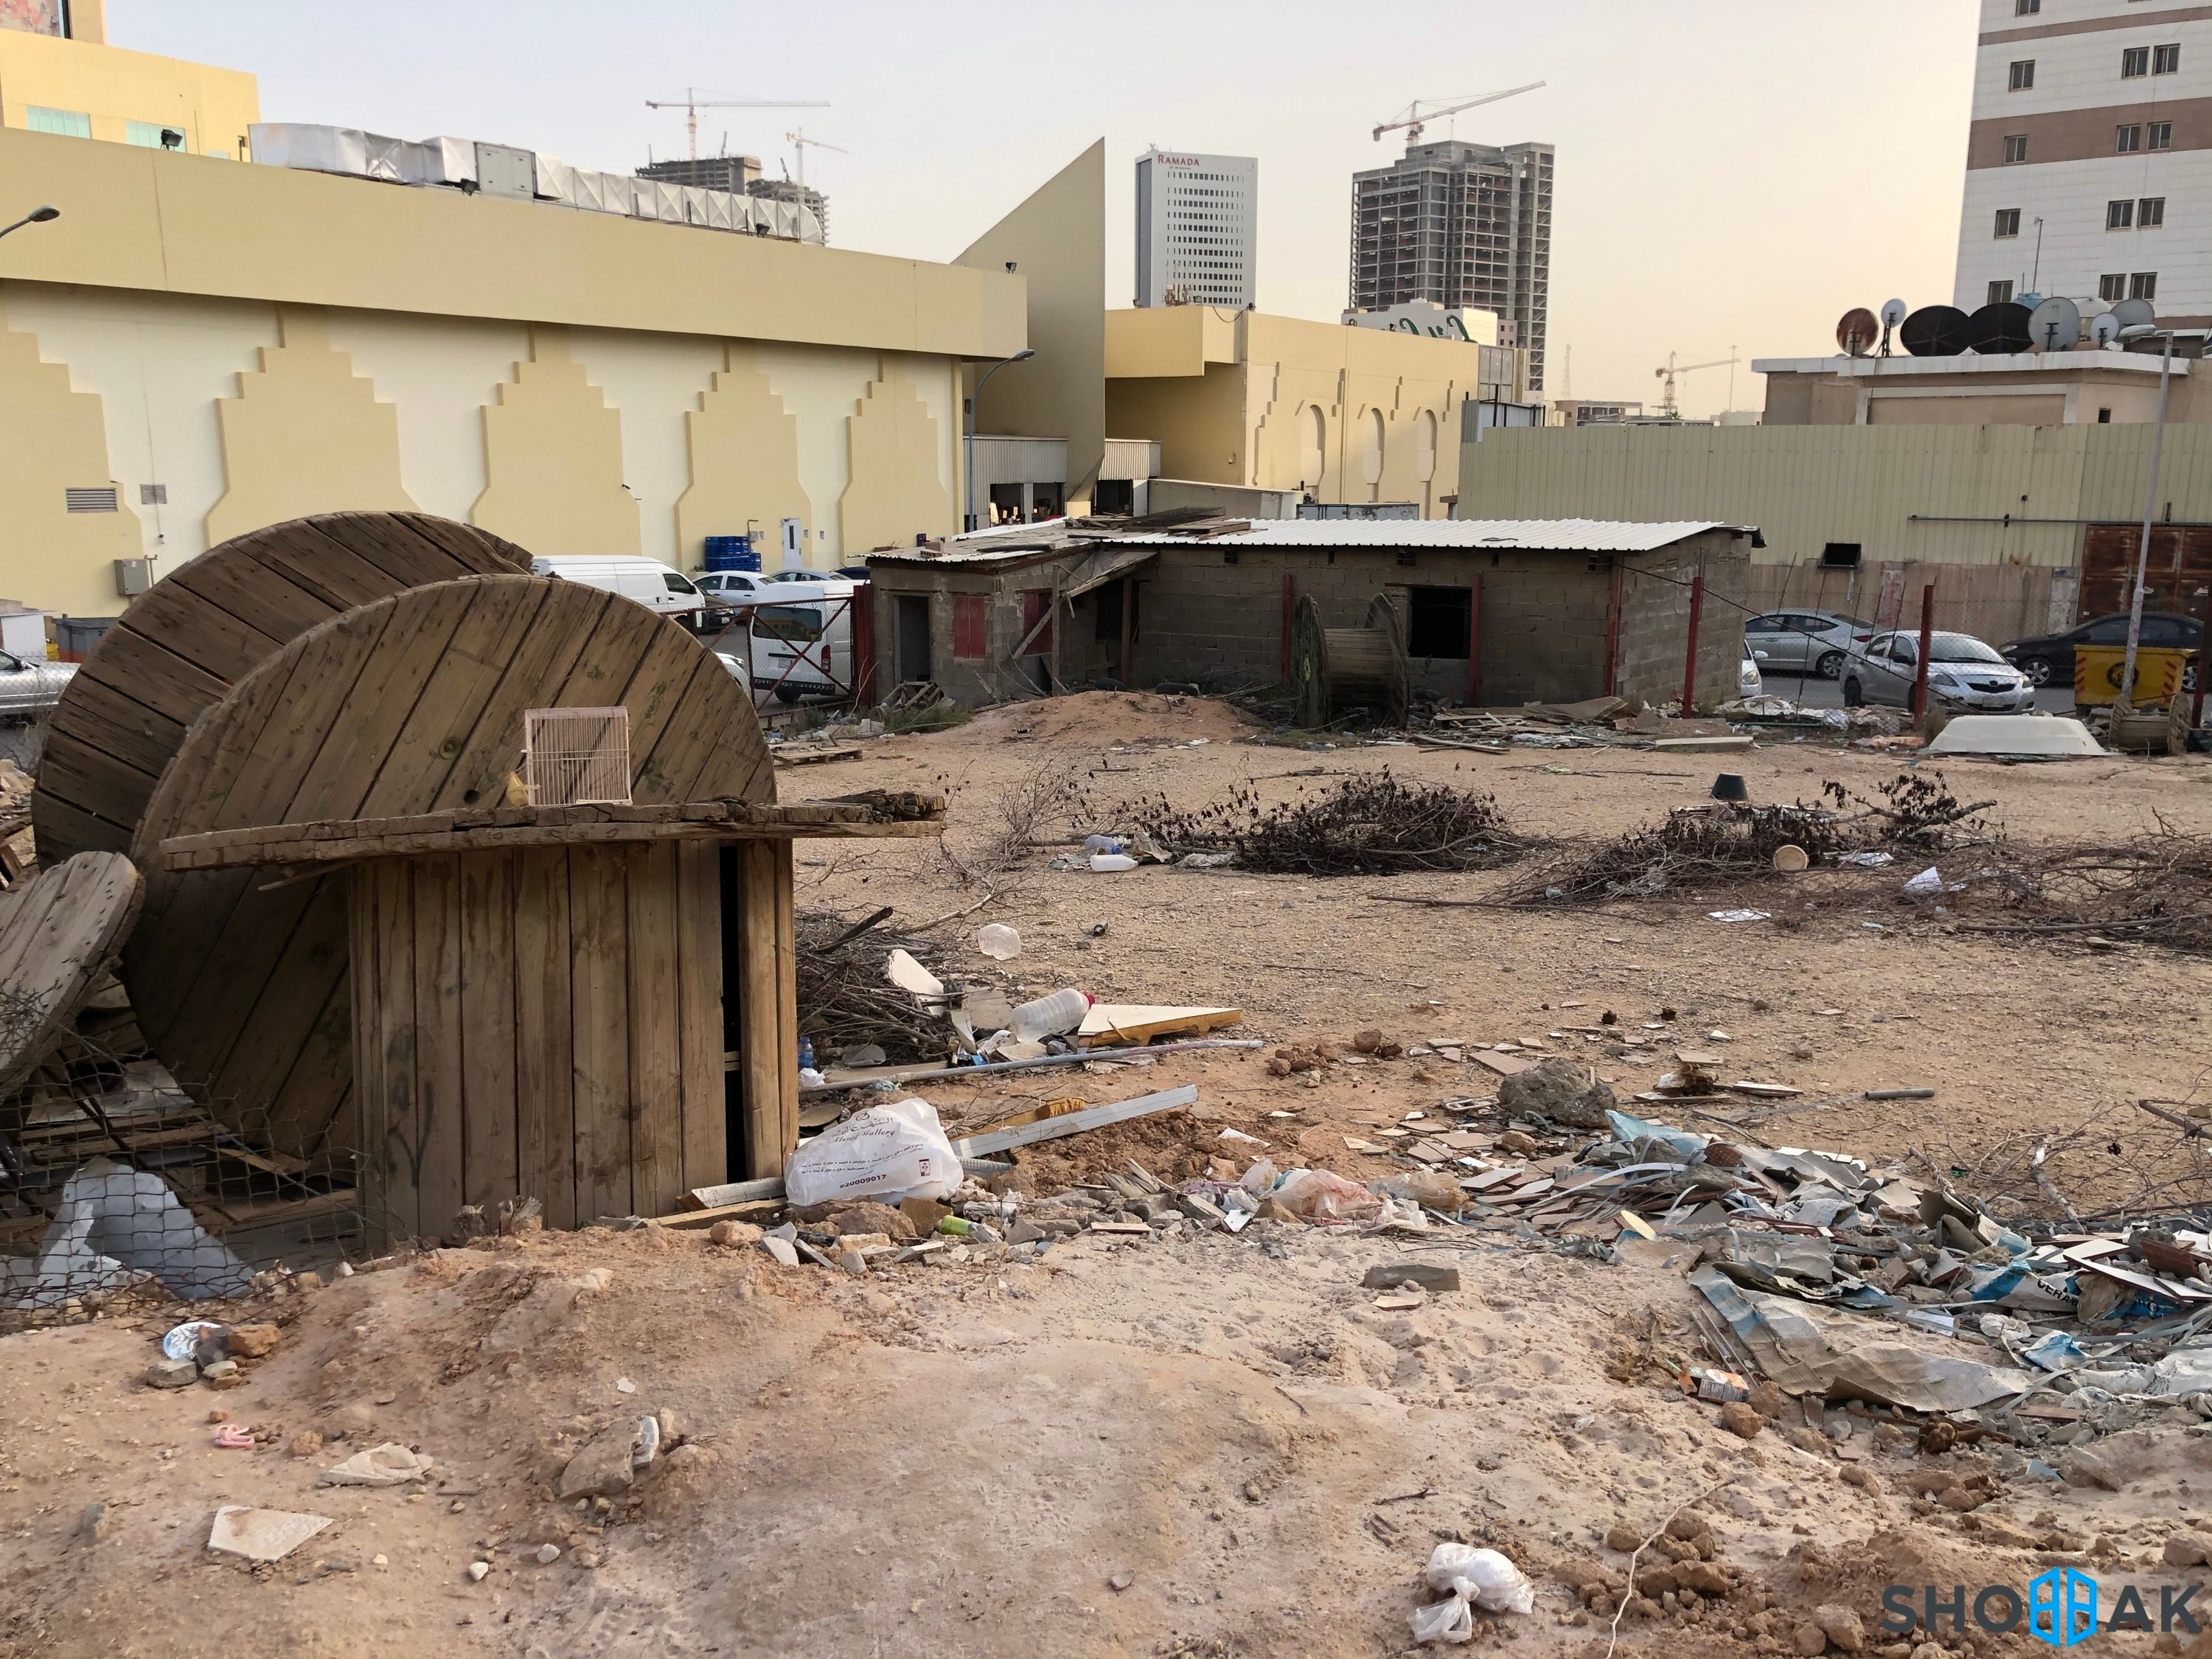 أرض للبيع - شارع البلسم - حي المربع  شباك السعودية